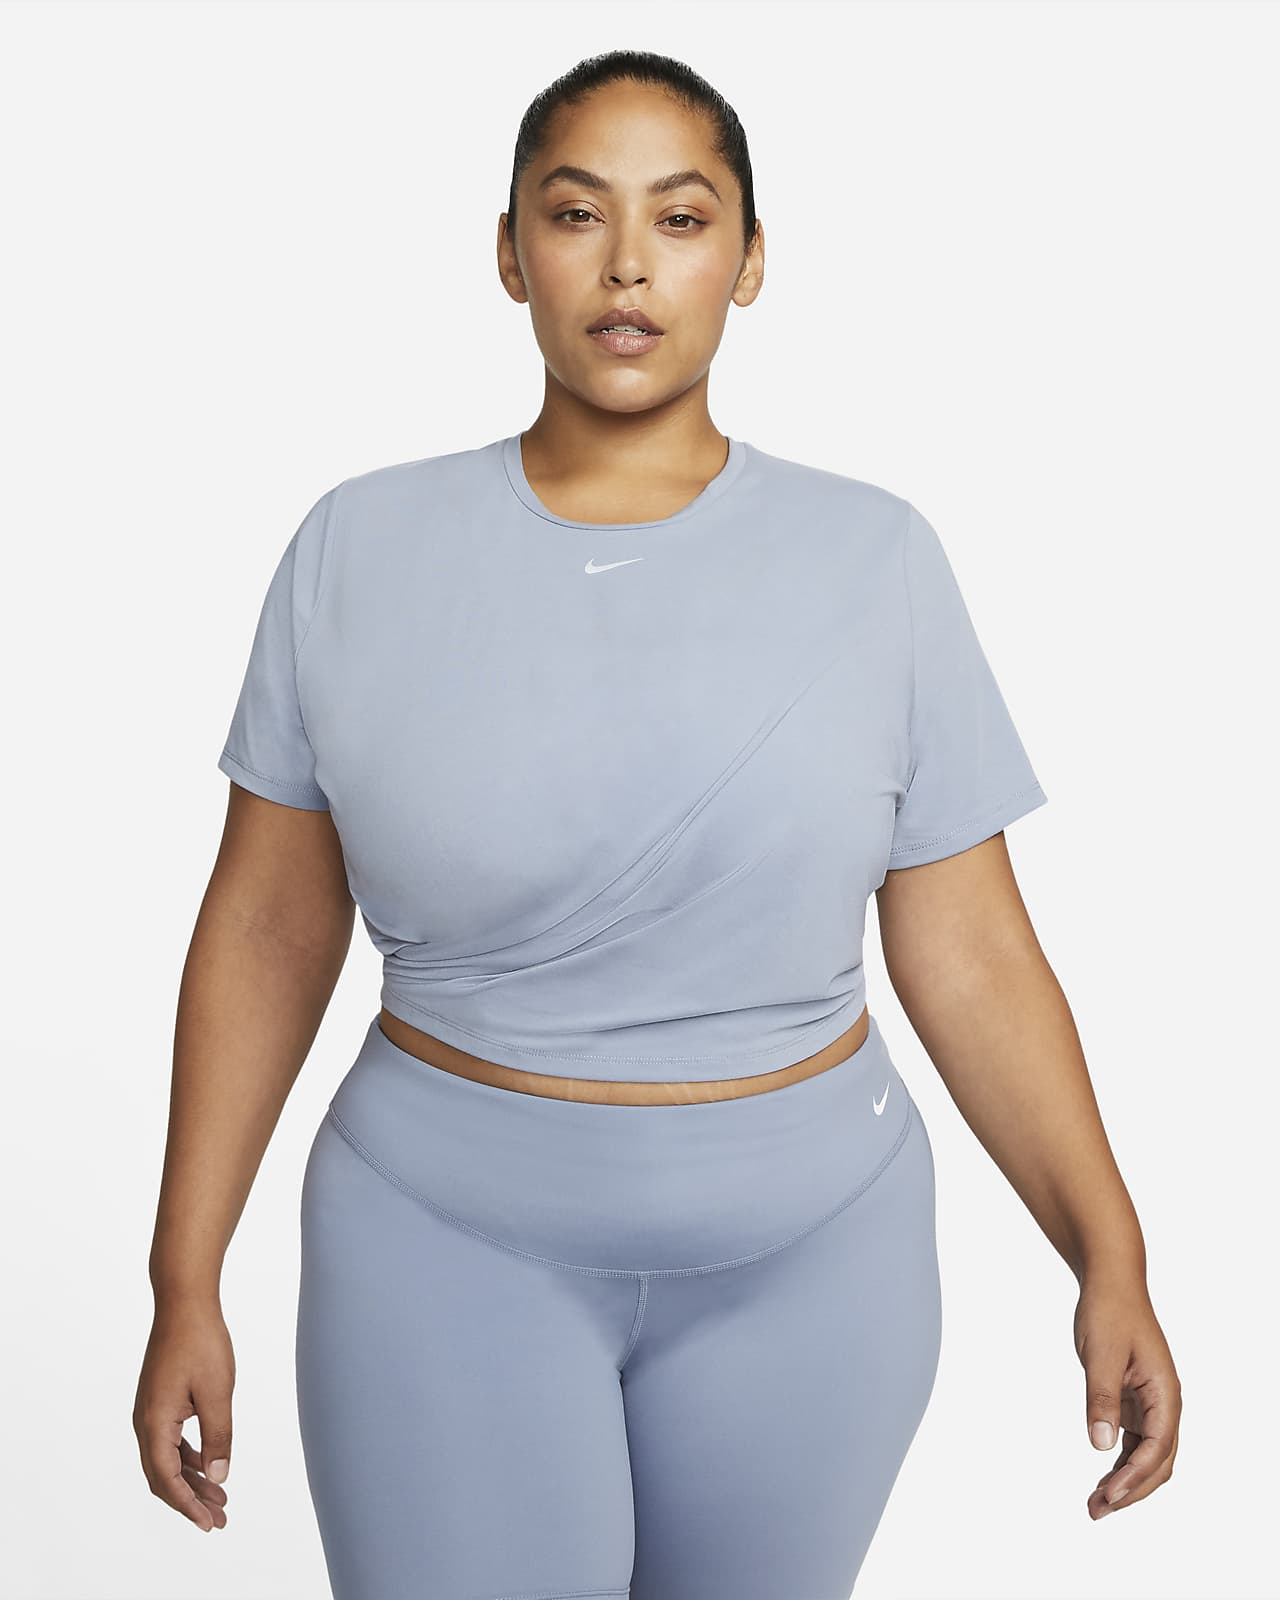 Nike Dri-FIT One Luxe Women's Standard Fit Short-Sleeve Twist Top (Plus Size)